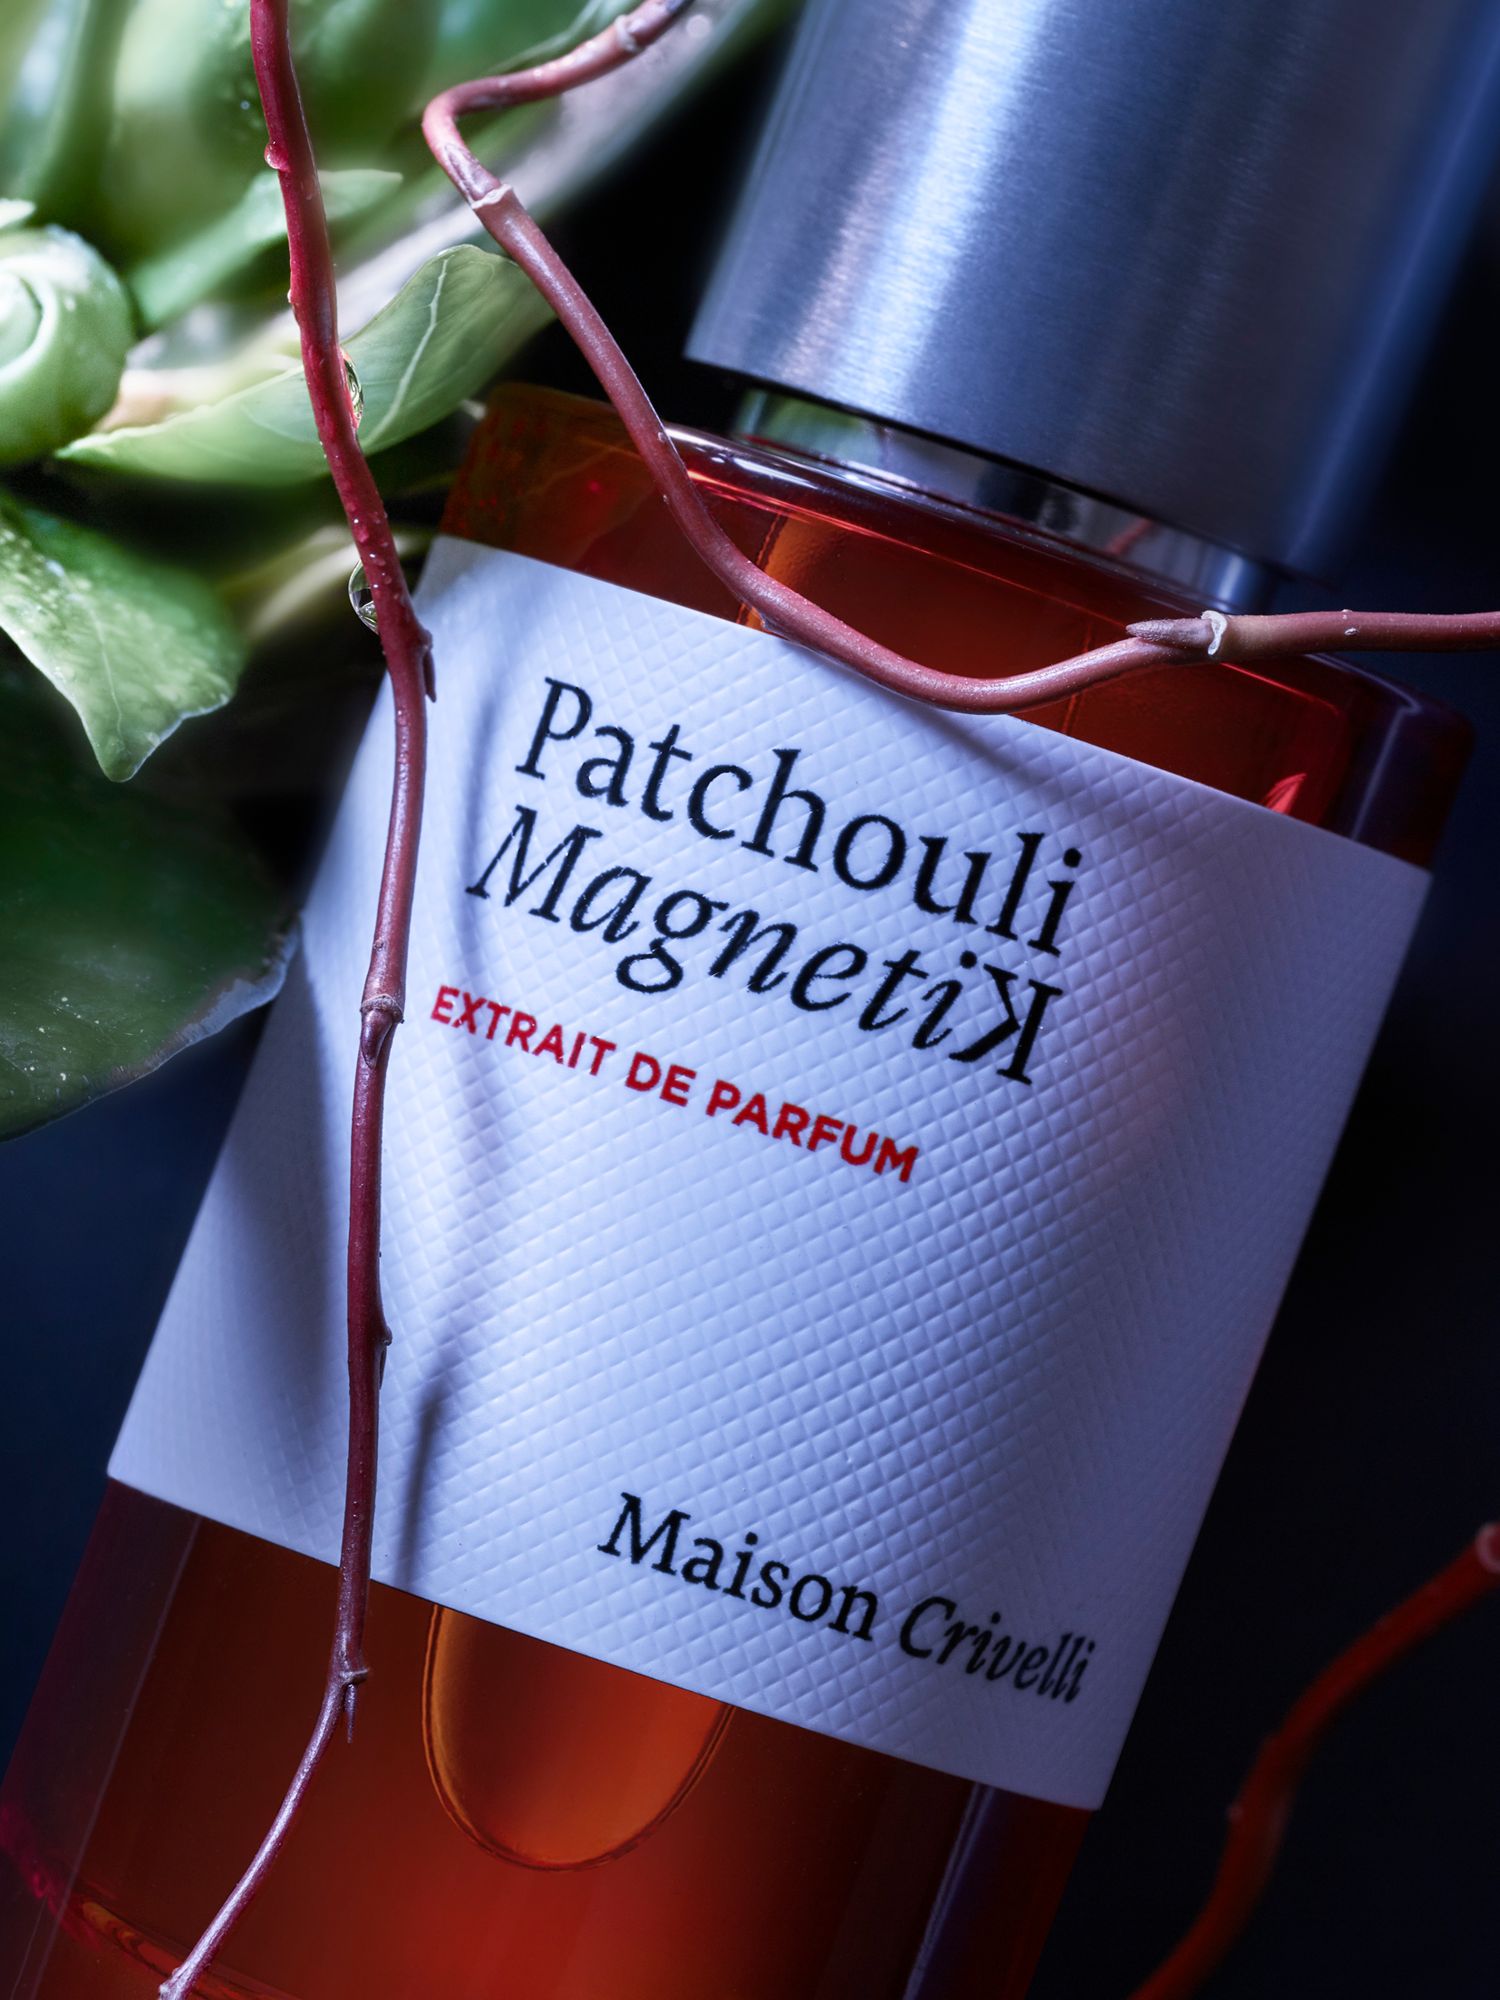 Maison Crivelli Patchouli Magnetik Extrait de Parfum, 50ml 3